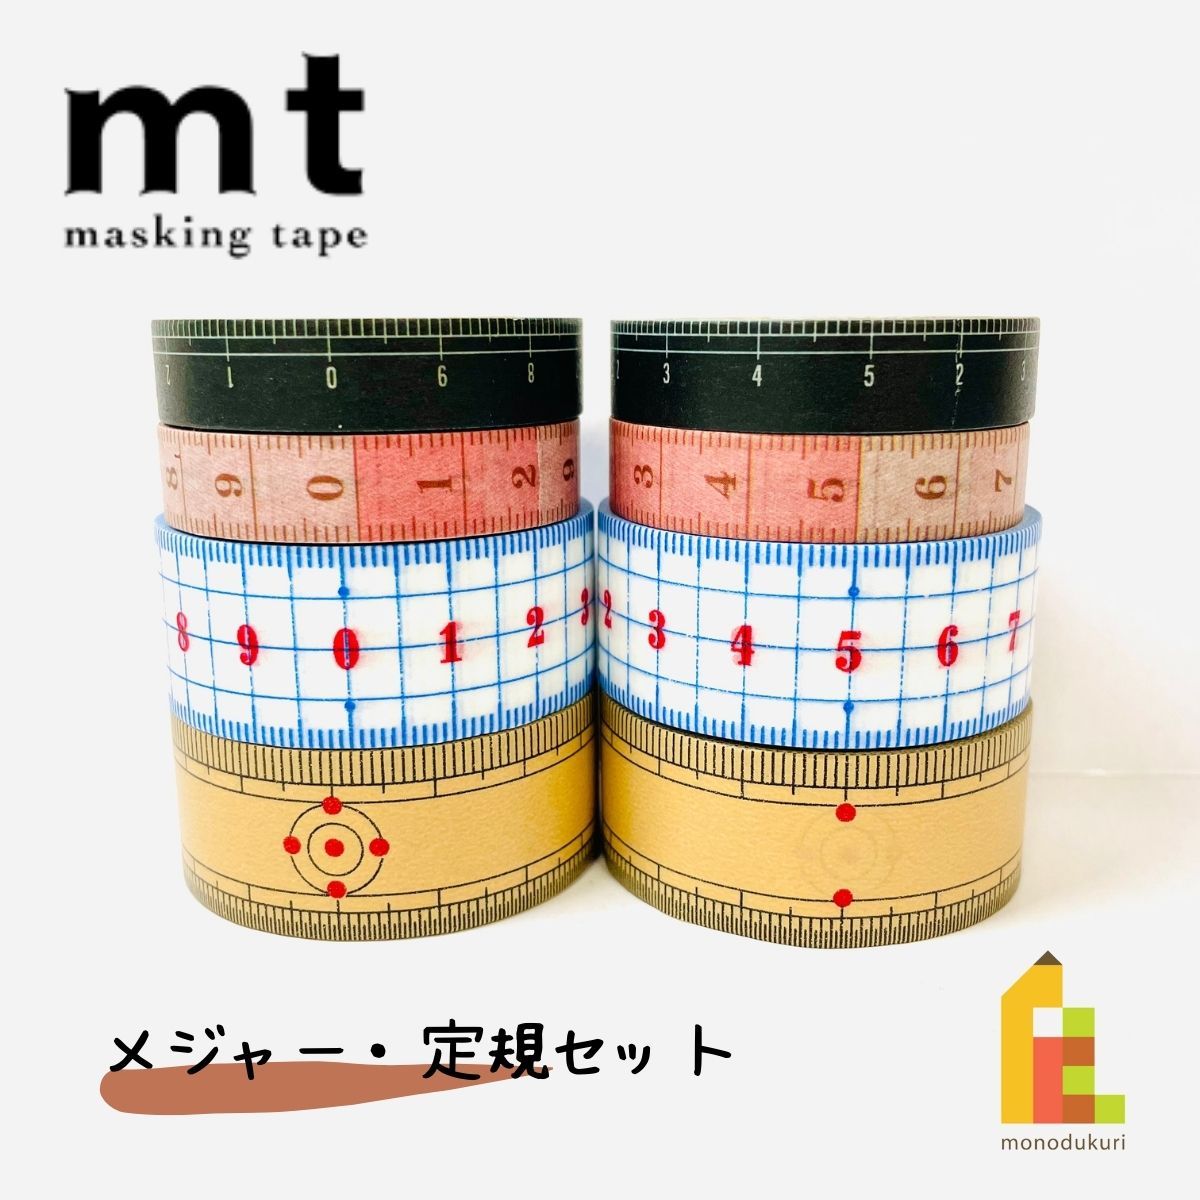 1,000 иен ровно план маскировочная лента утка . обработка бумага mt Major линейка 8 шт комплект шт упаковка MT1000-10 бесплатная доставка 